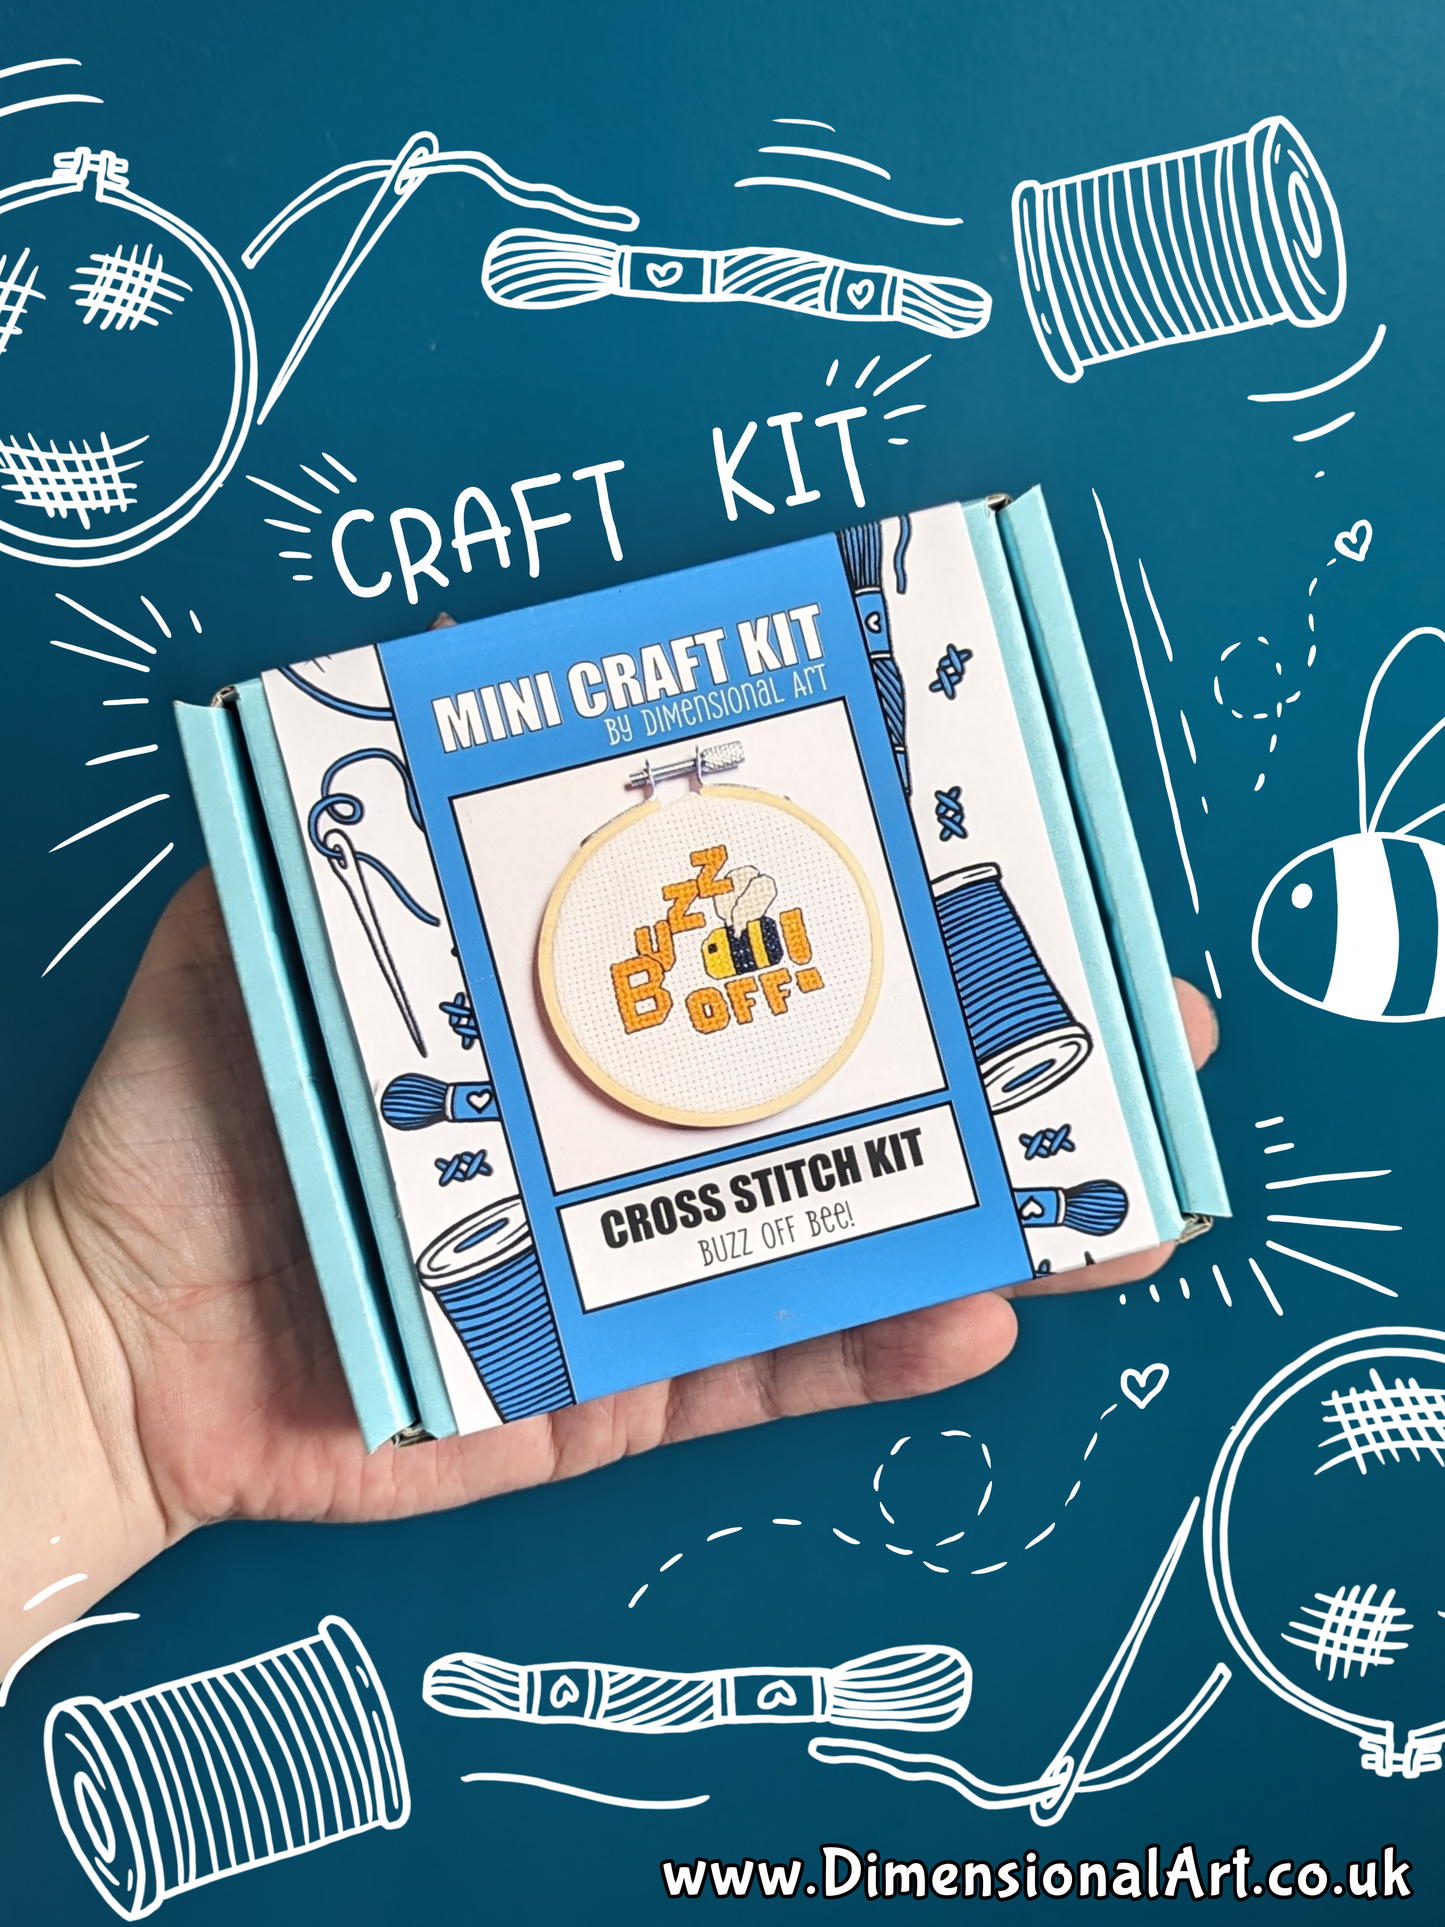 Mini Craft Kit - Cross Stitch Kit - Buzz Off Bee - CSK001